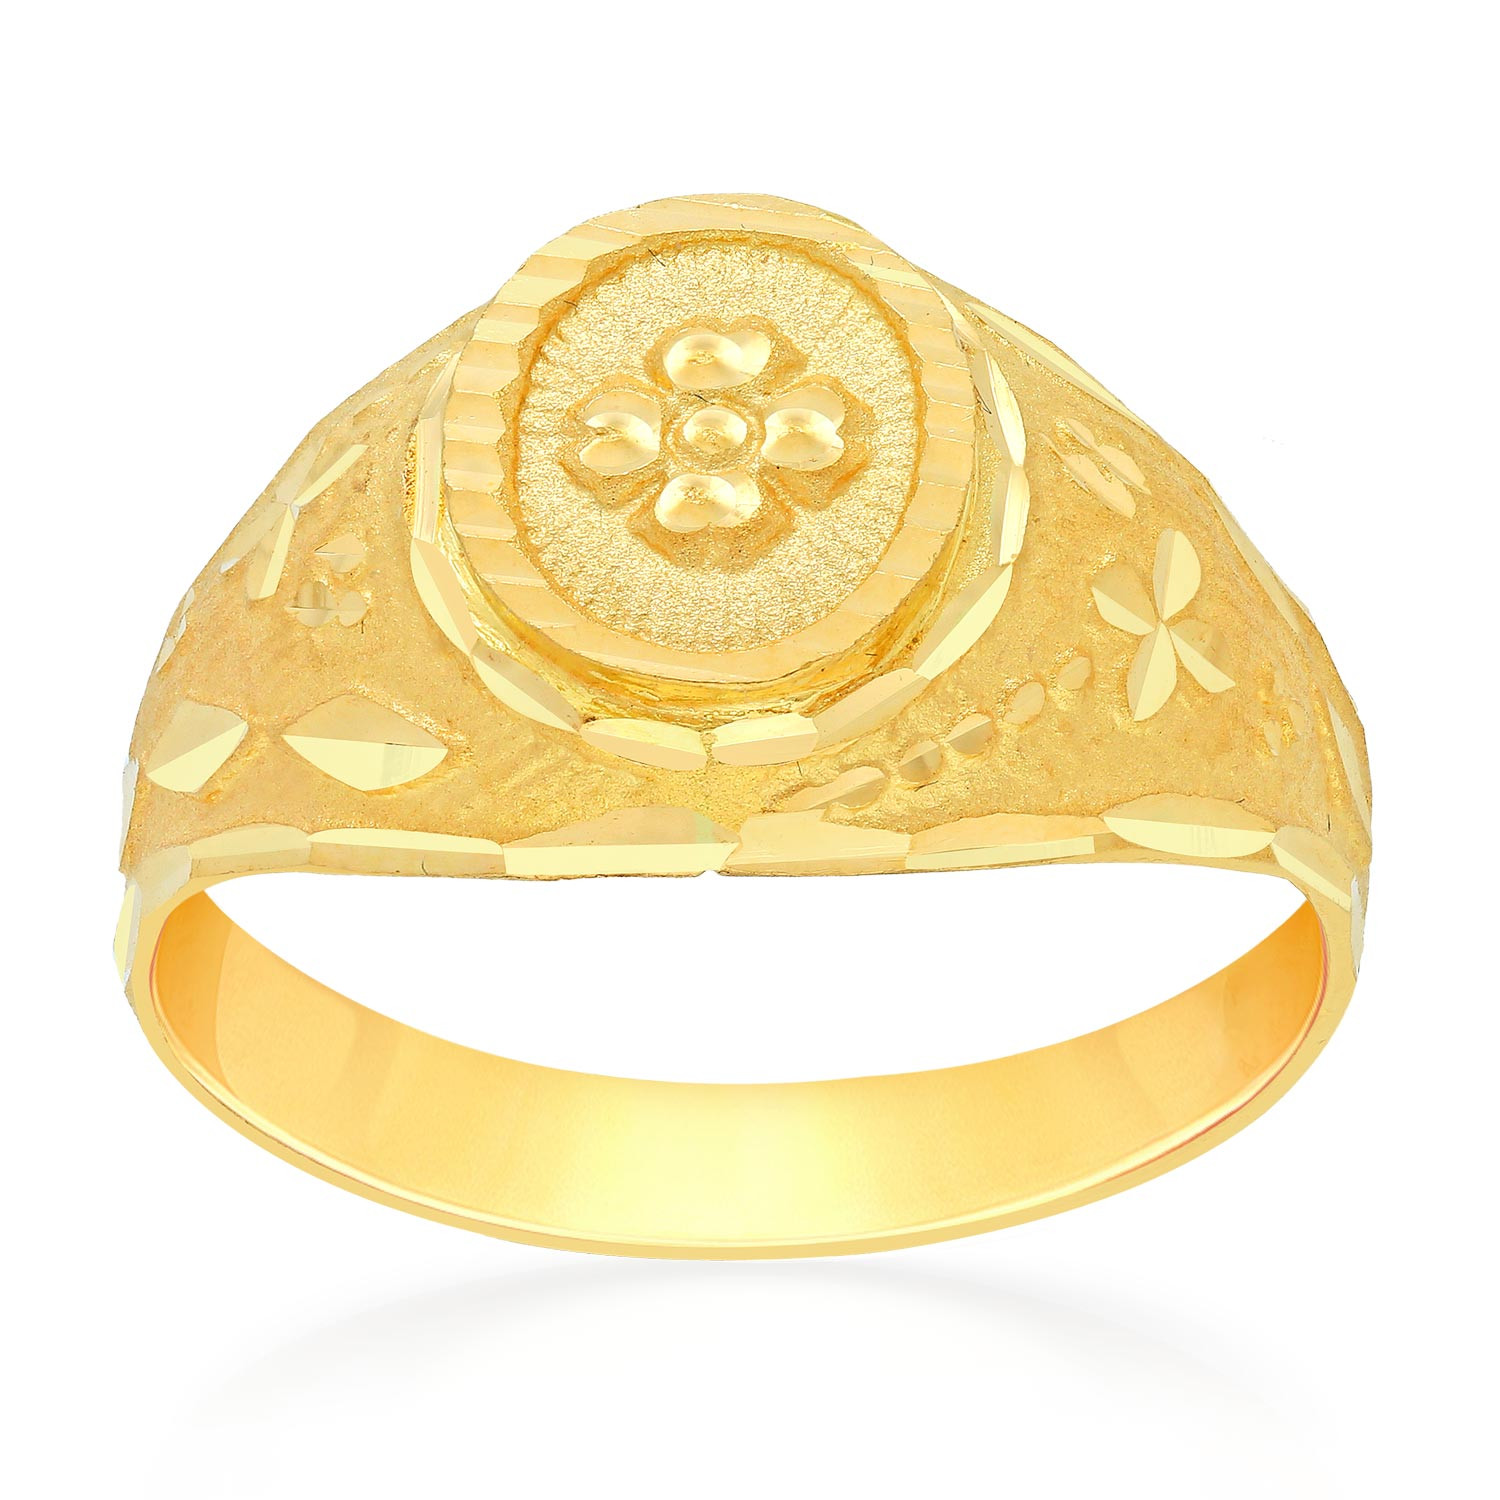 Malabar Gold Ring MHAAAAAIWWZX